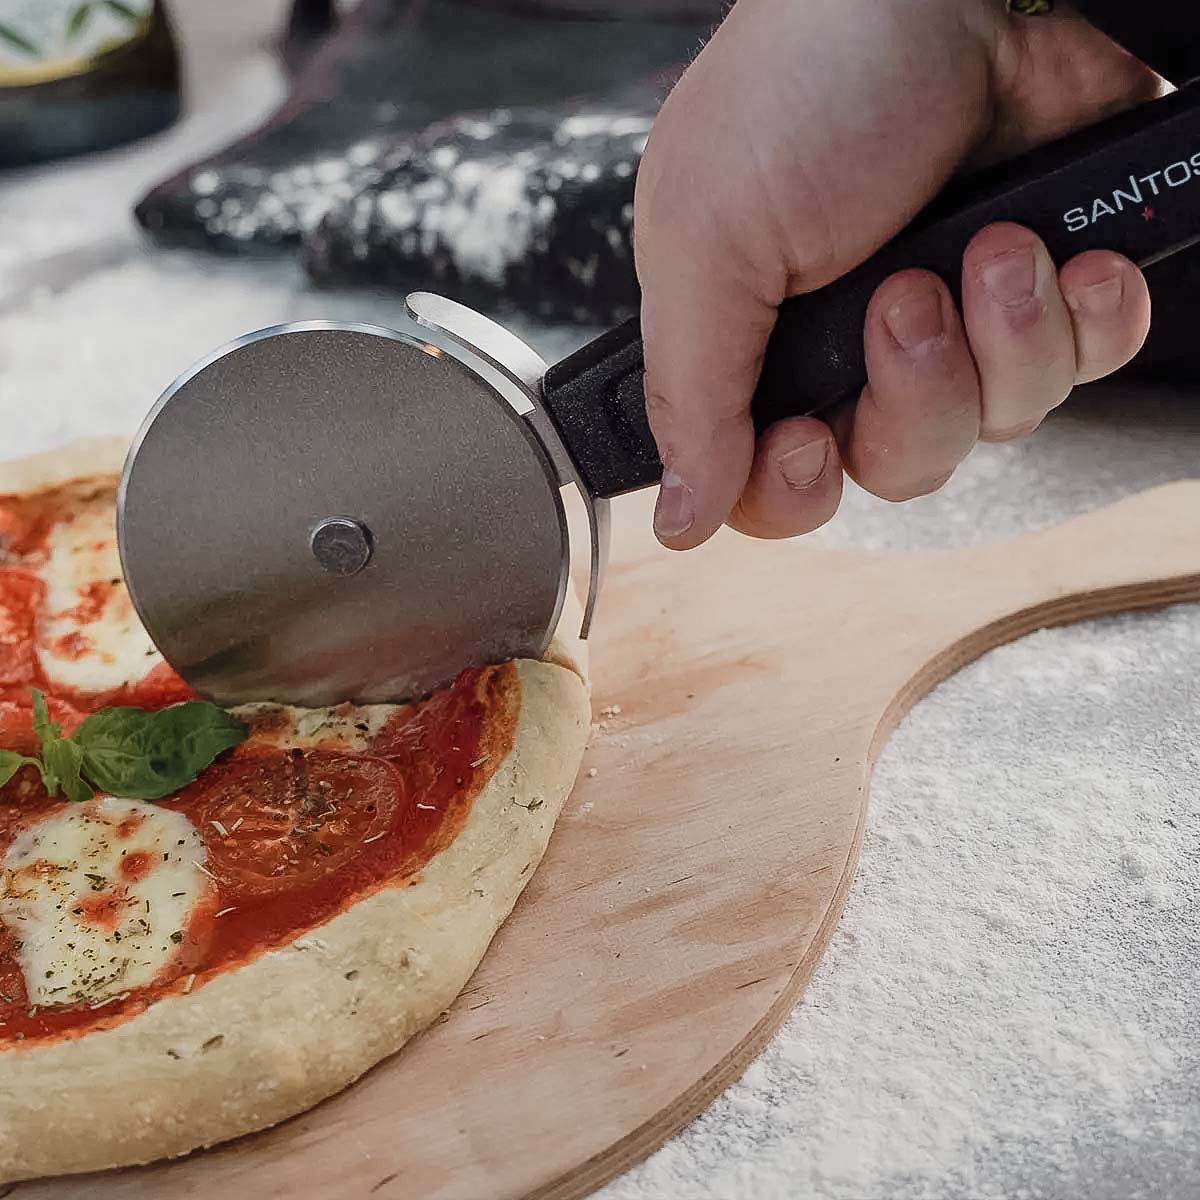 SANTOS & - Pizza-Cutter Pizzamesser, 27x2x10cm - - Griff schneiden ergonomischem sicheres Pizzaschneider - Pizzaroller, verletzungsfreies Edelstahl